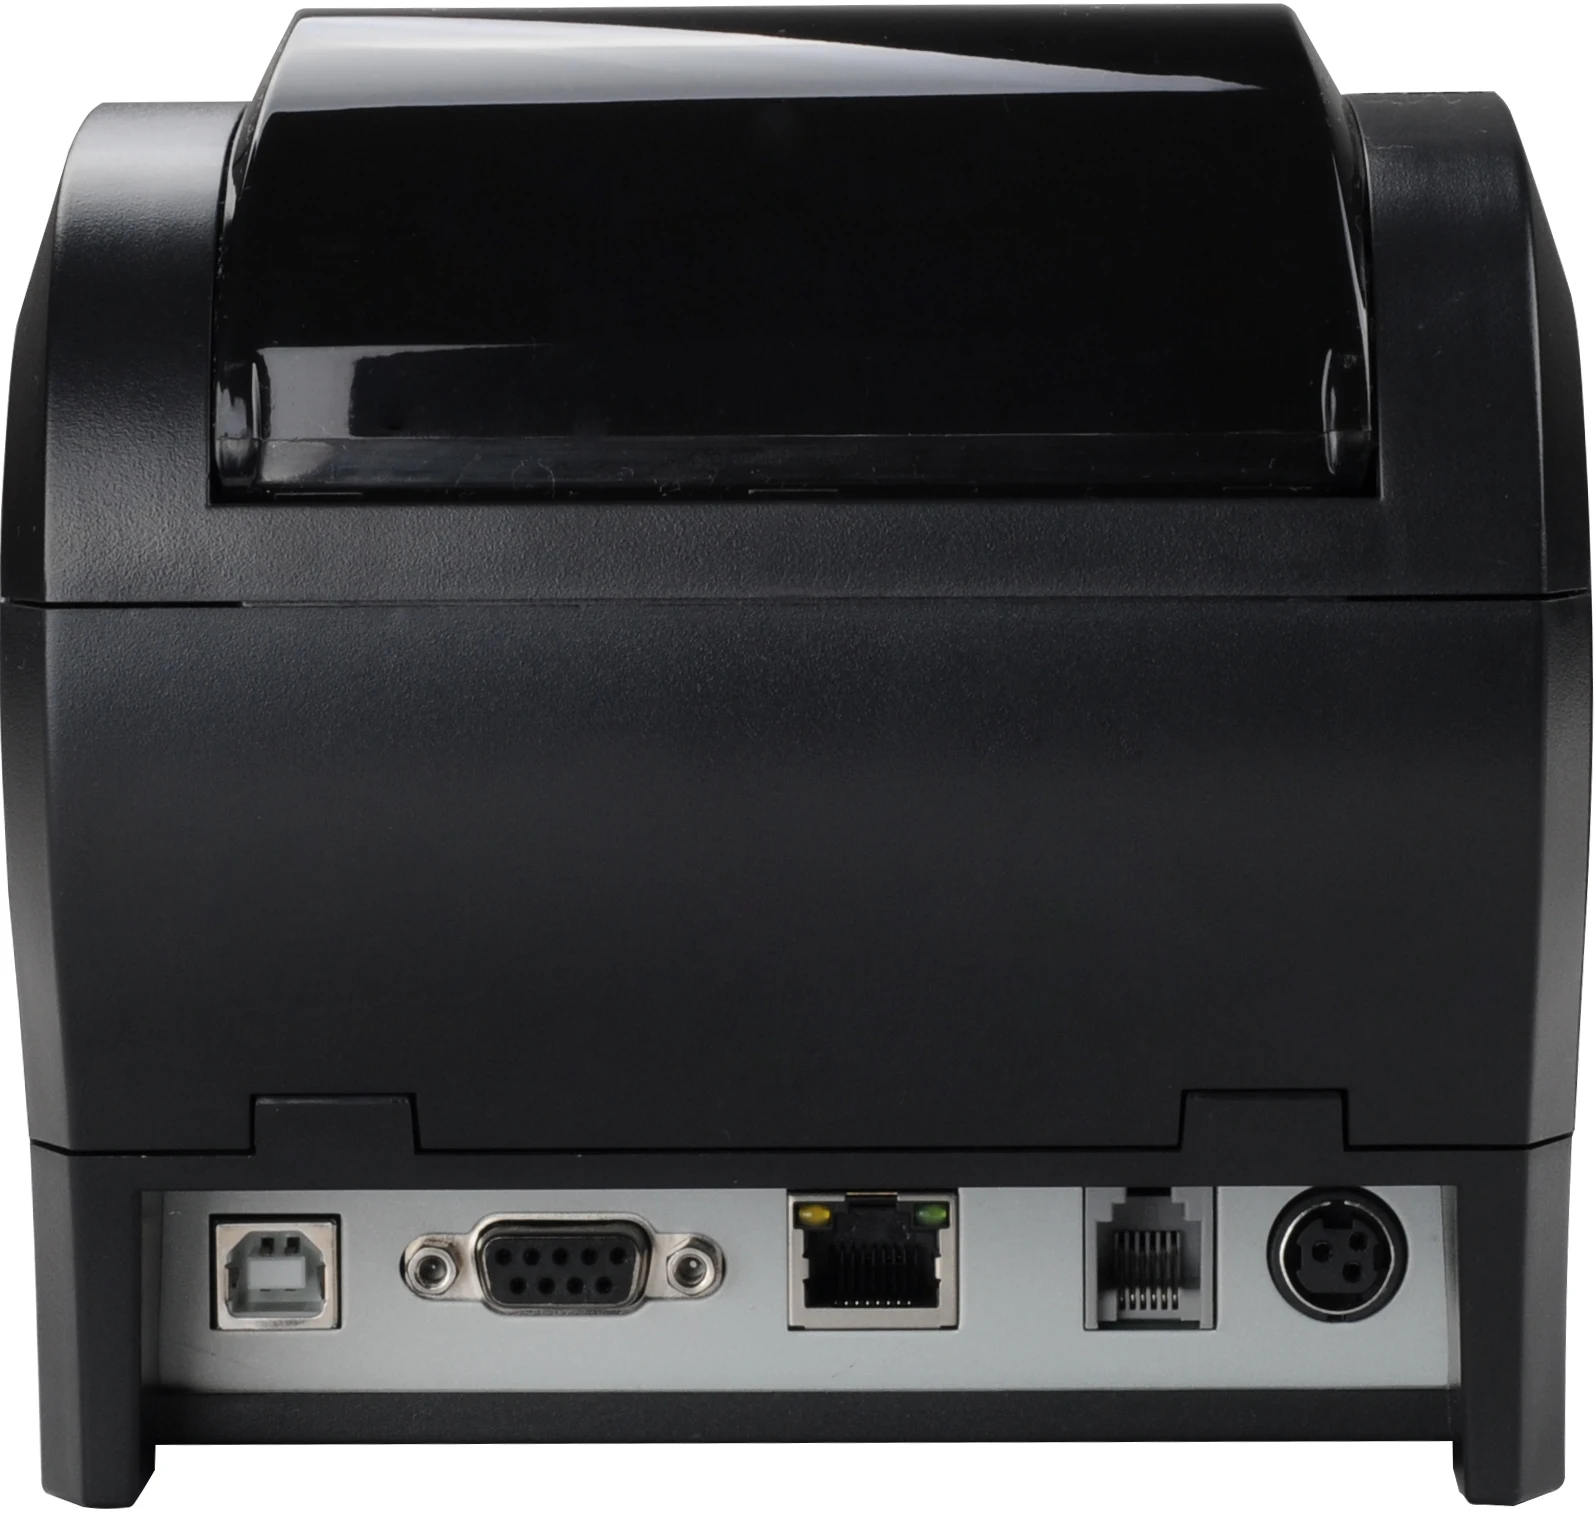 Оборудование для компьютерных принтеров, принтер для терминалов Pos-терминалов на базе Android, термопринтер для чеков, прямая термопечать 80 мм